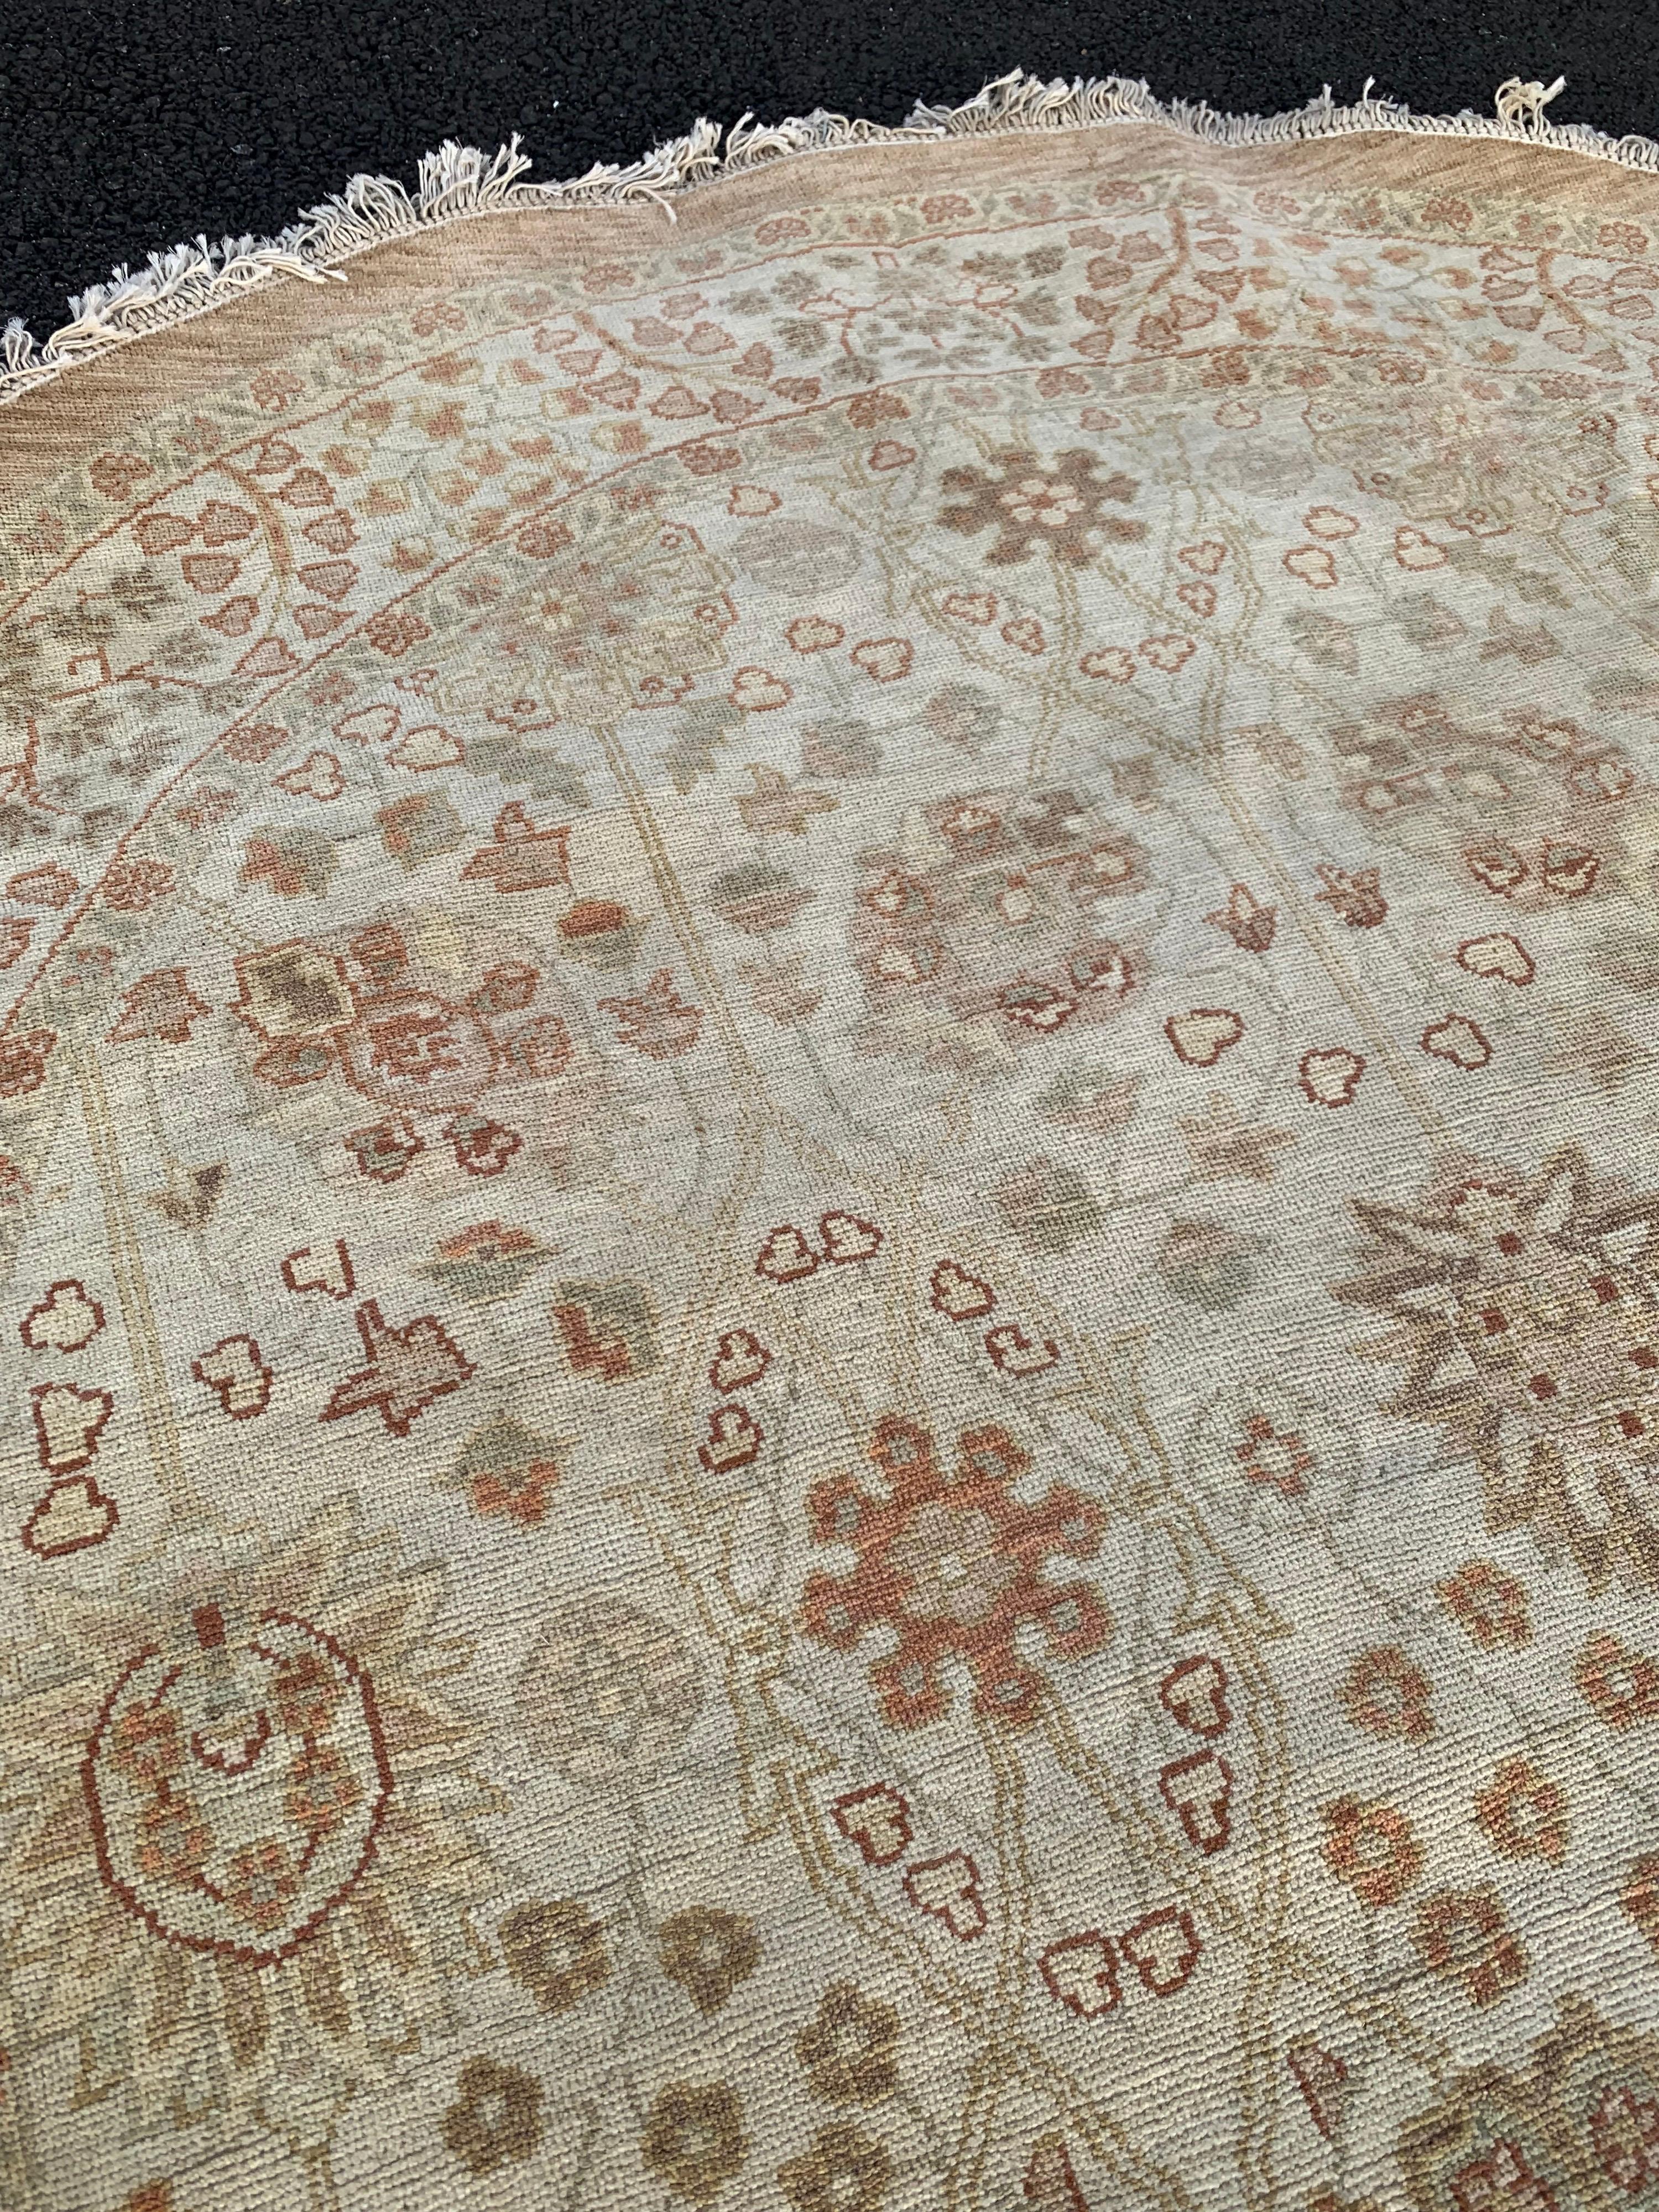 Dies ist ein neuer Teppich im persischen Design, der in den 1990er Jahren in Alexandria, Ägypten, handgewebt wurde. Wir haben diese Teppiche hergestellt und das Design und die Farben wurden von uns selbst ausgewählt. Wir haben eine große Auswahl an